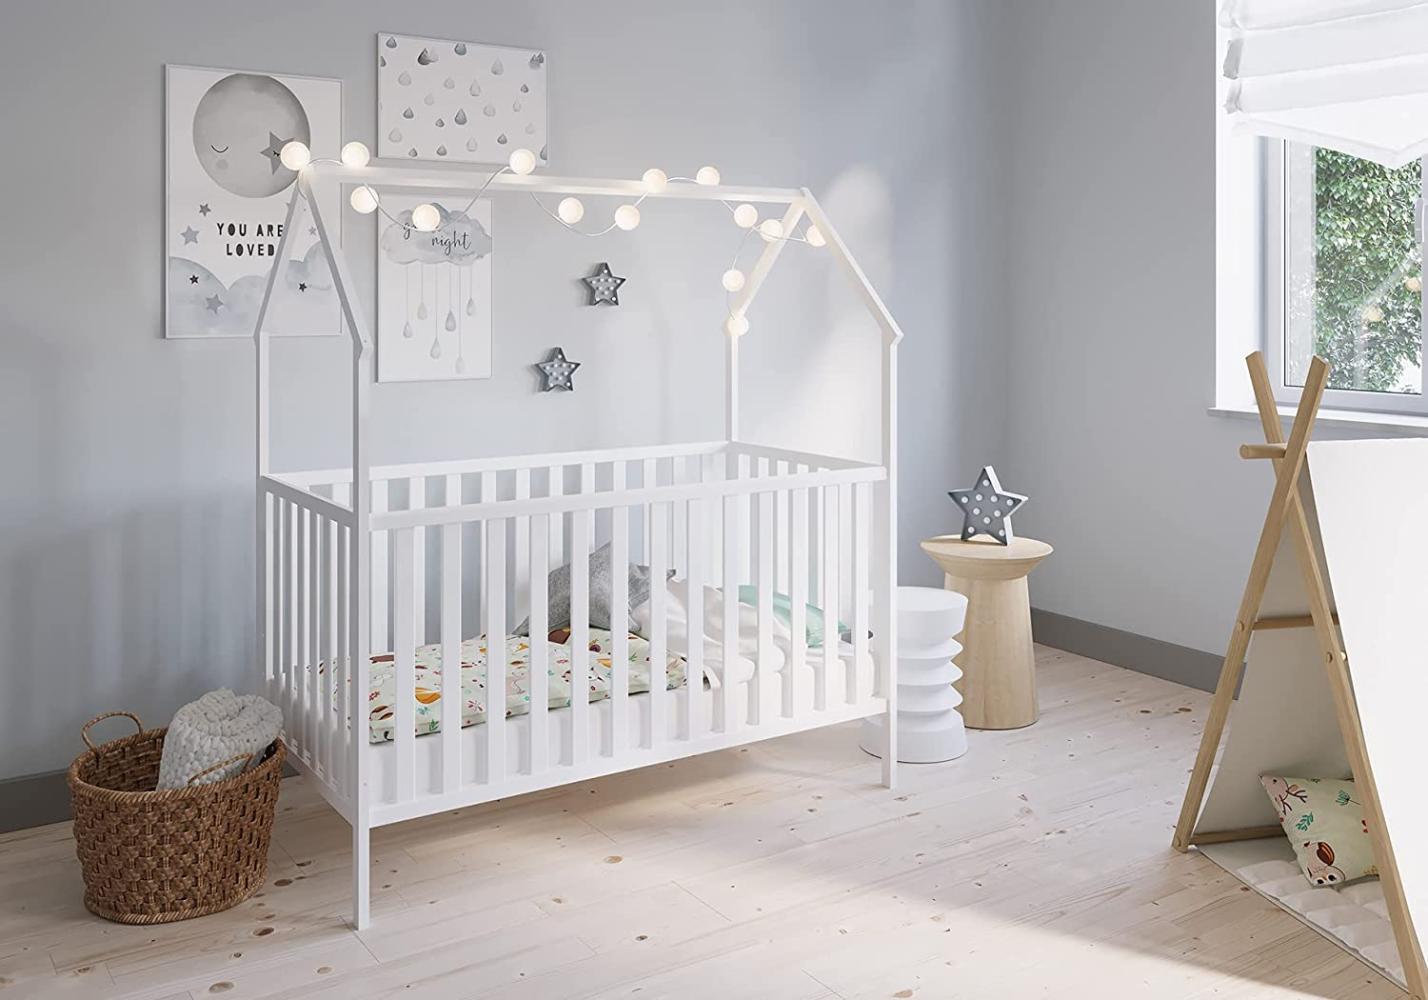 FabiMax 'Schlafmütze' Kinderbett, 70 x 140 cm, weiß, mit Matratze Classic, Kiefer massiv, 3-fach höhenverstellbar, umbaubar Bild 1